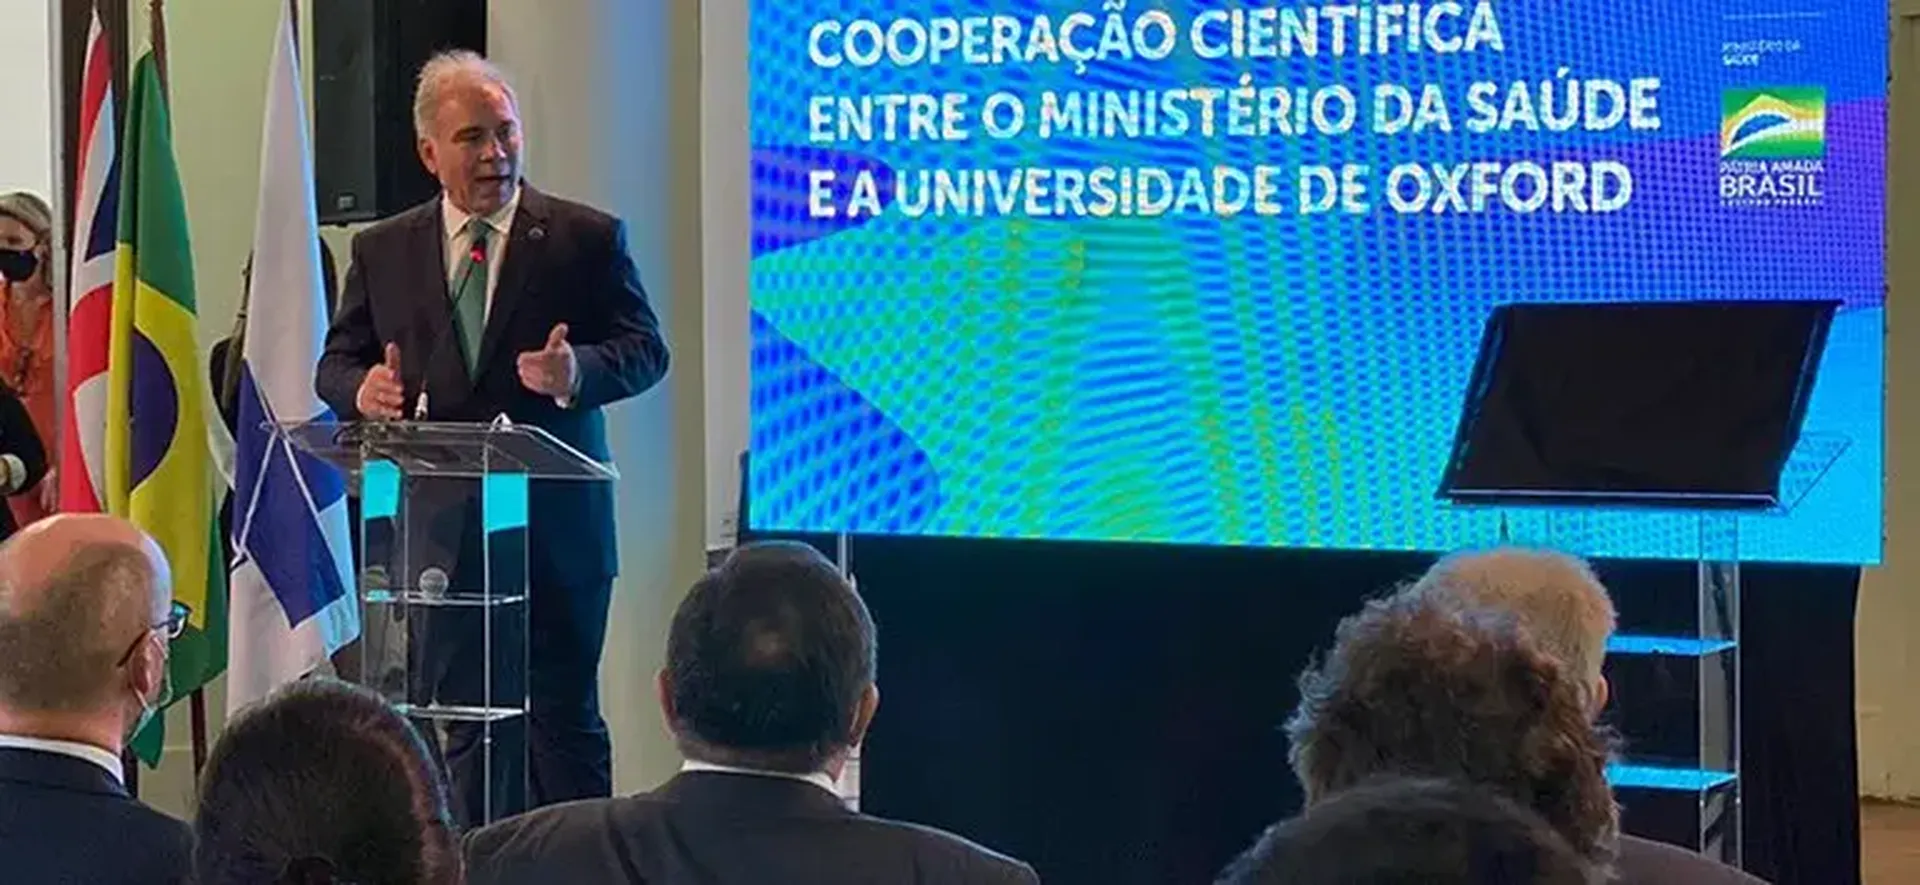 Pesquisadores brasileiros e da Universidade de Oxford vão atuar juntos em cooperação inédita